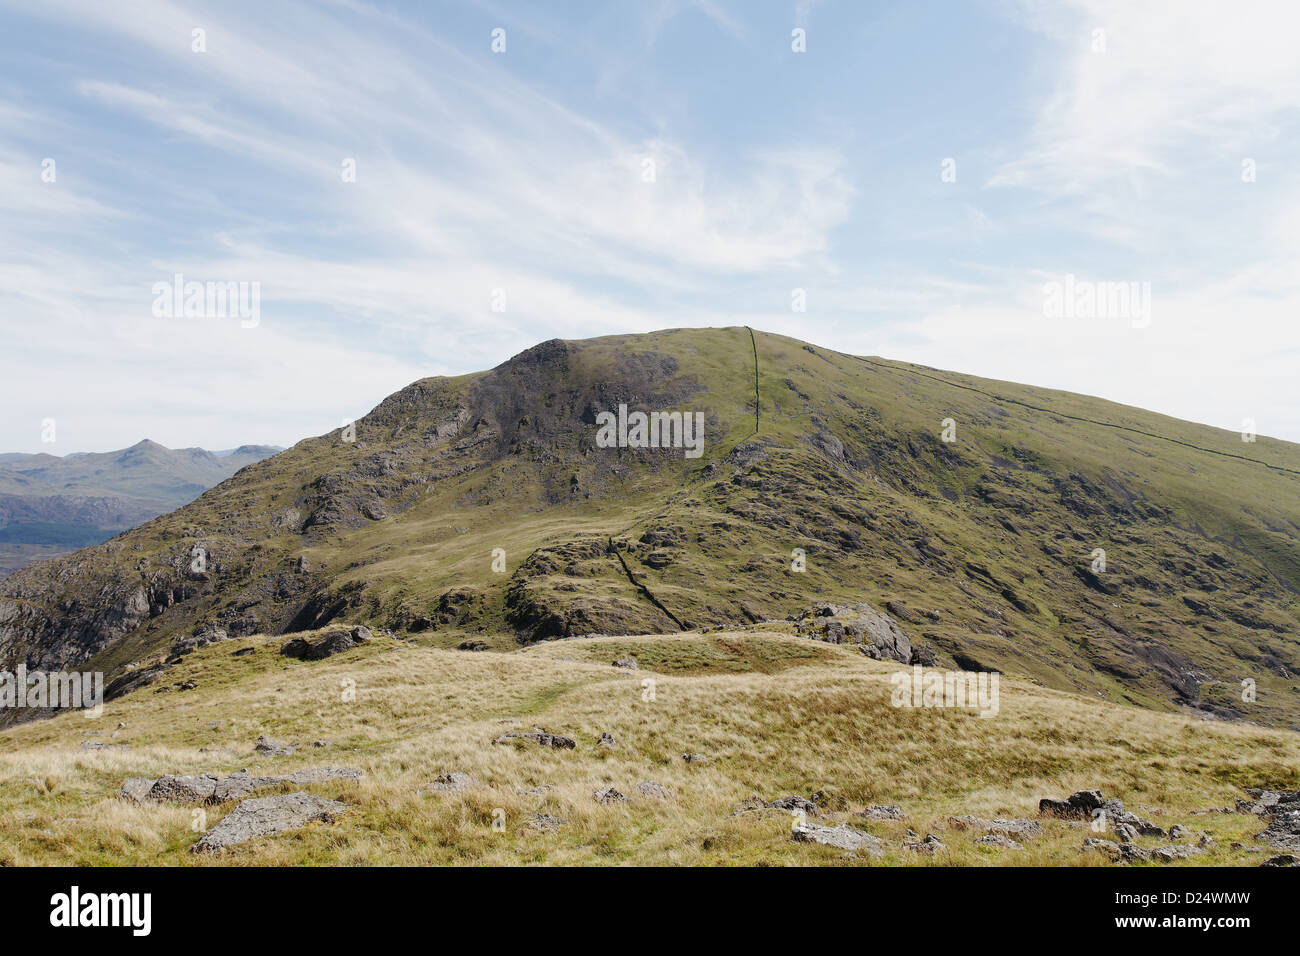 View of Moel Hebog from Moel yr Ogof, Snowdonia Stock Photo